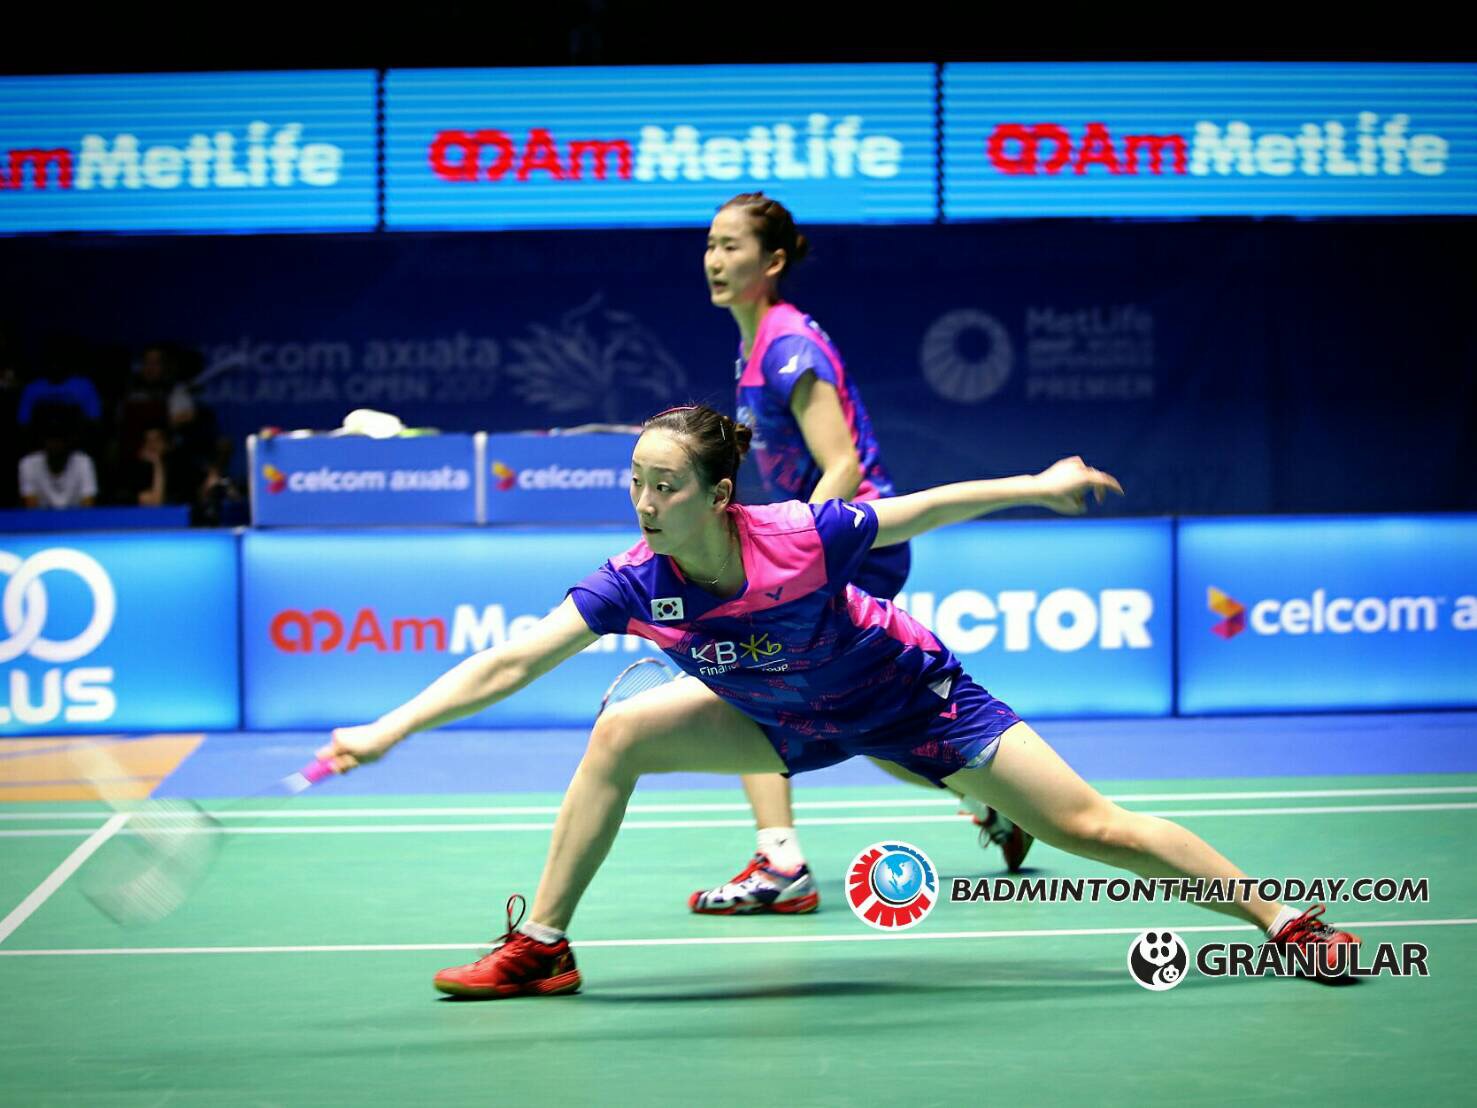 82 นาทีสำหรับสองสาวจีนที่ต่อสู้กับสาวแดนโสมและชนะเพื่อเข้าสู่รอบชิงชนะเลิศในศึก Celcom Axiata Malaysia Open 2017